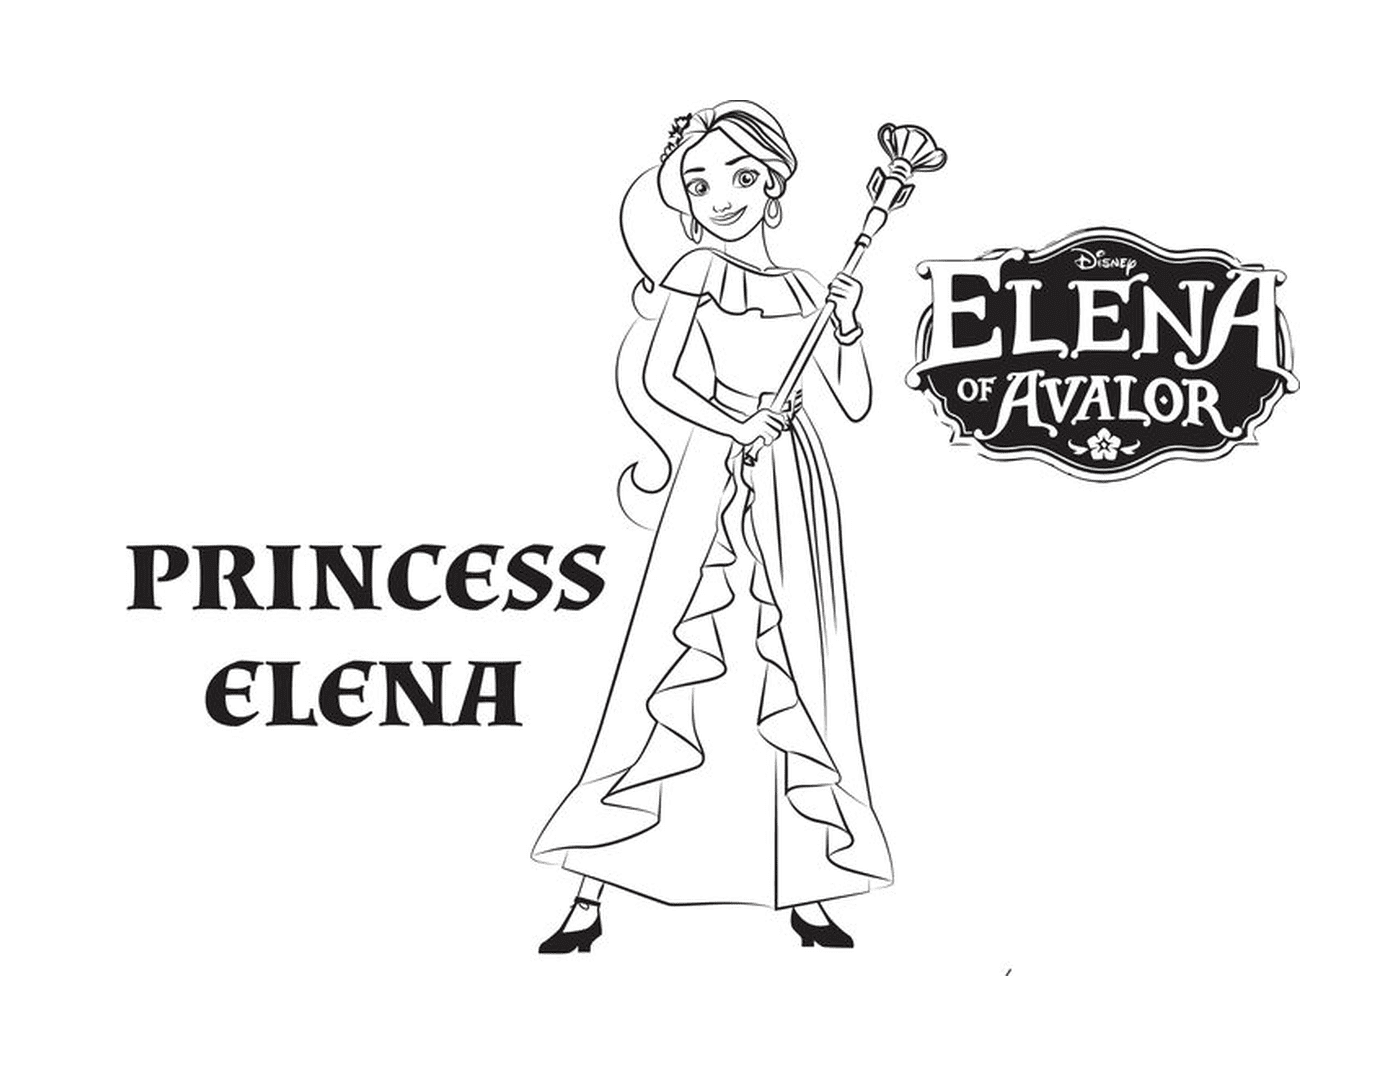  Princesa Elena da Disney Avalor 